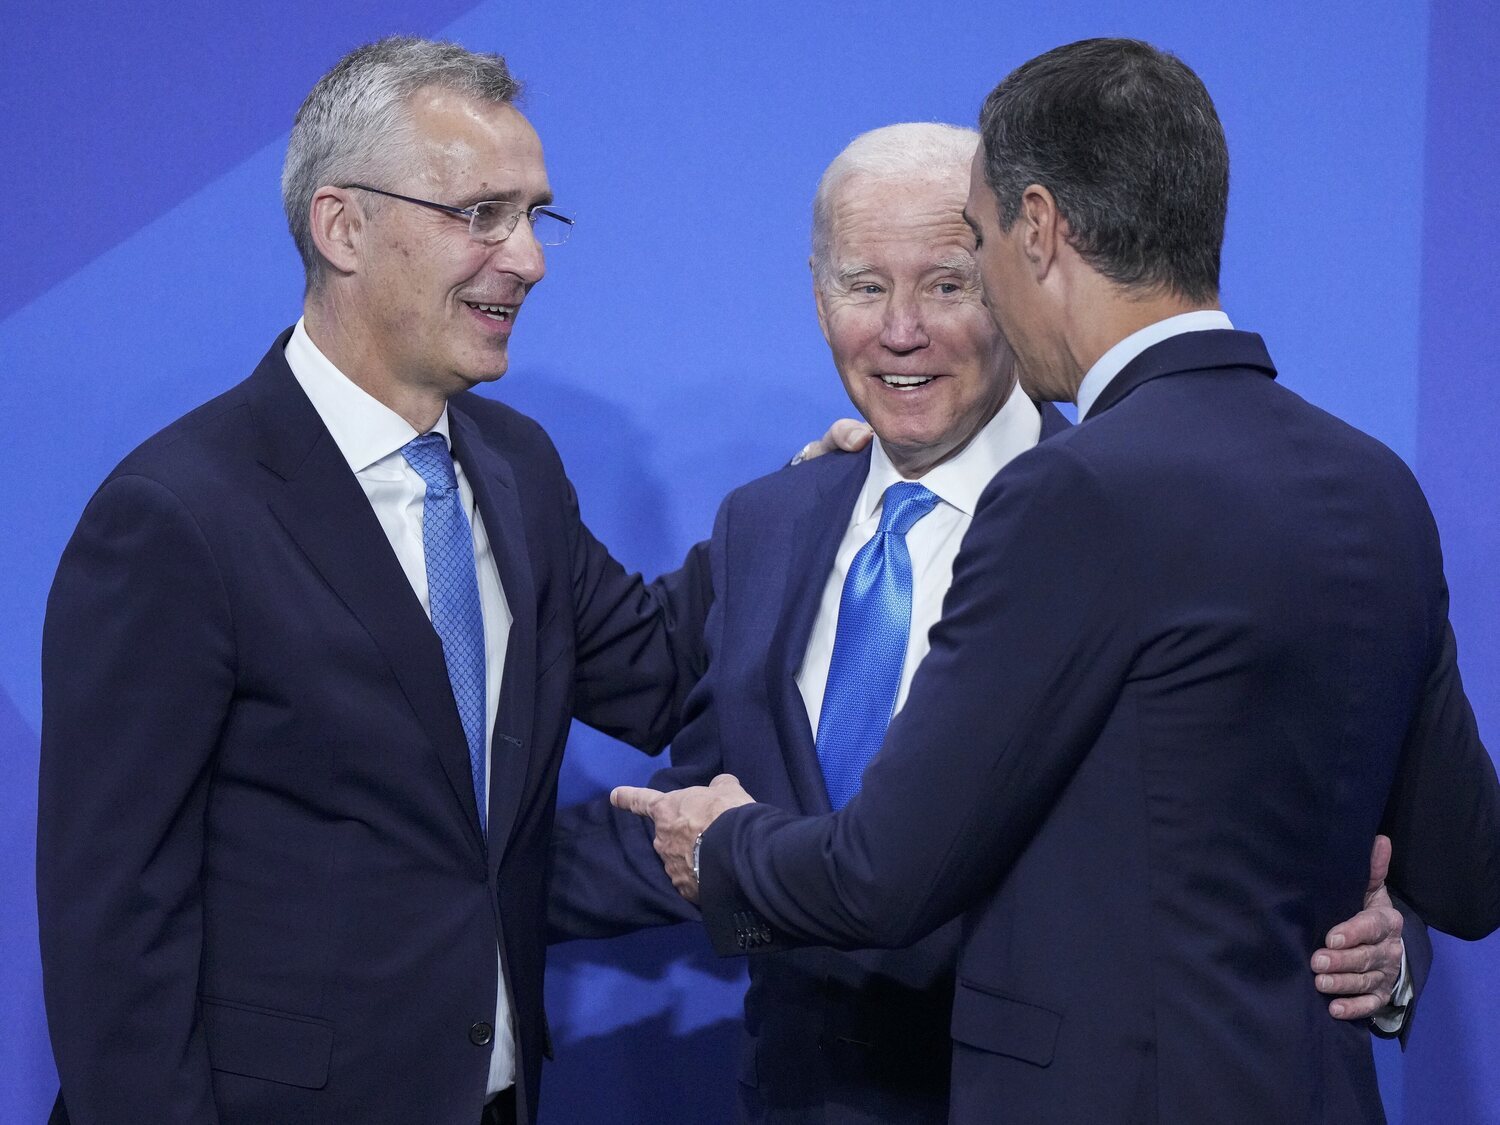 Claves del cierre de la cumbre de la OTAN en Madrid: un nuevo marco de relaciones internacionales que enfrenta el rearme